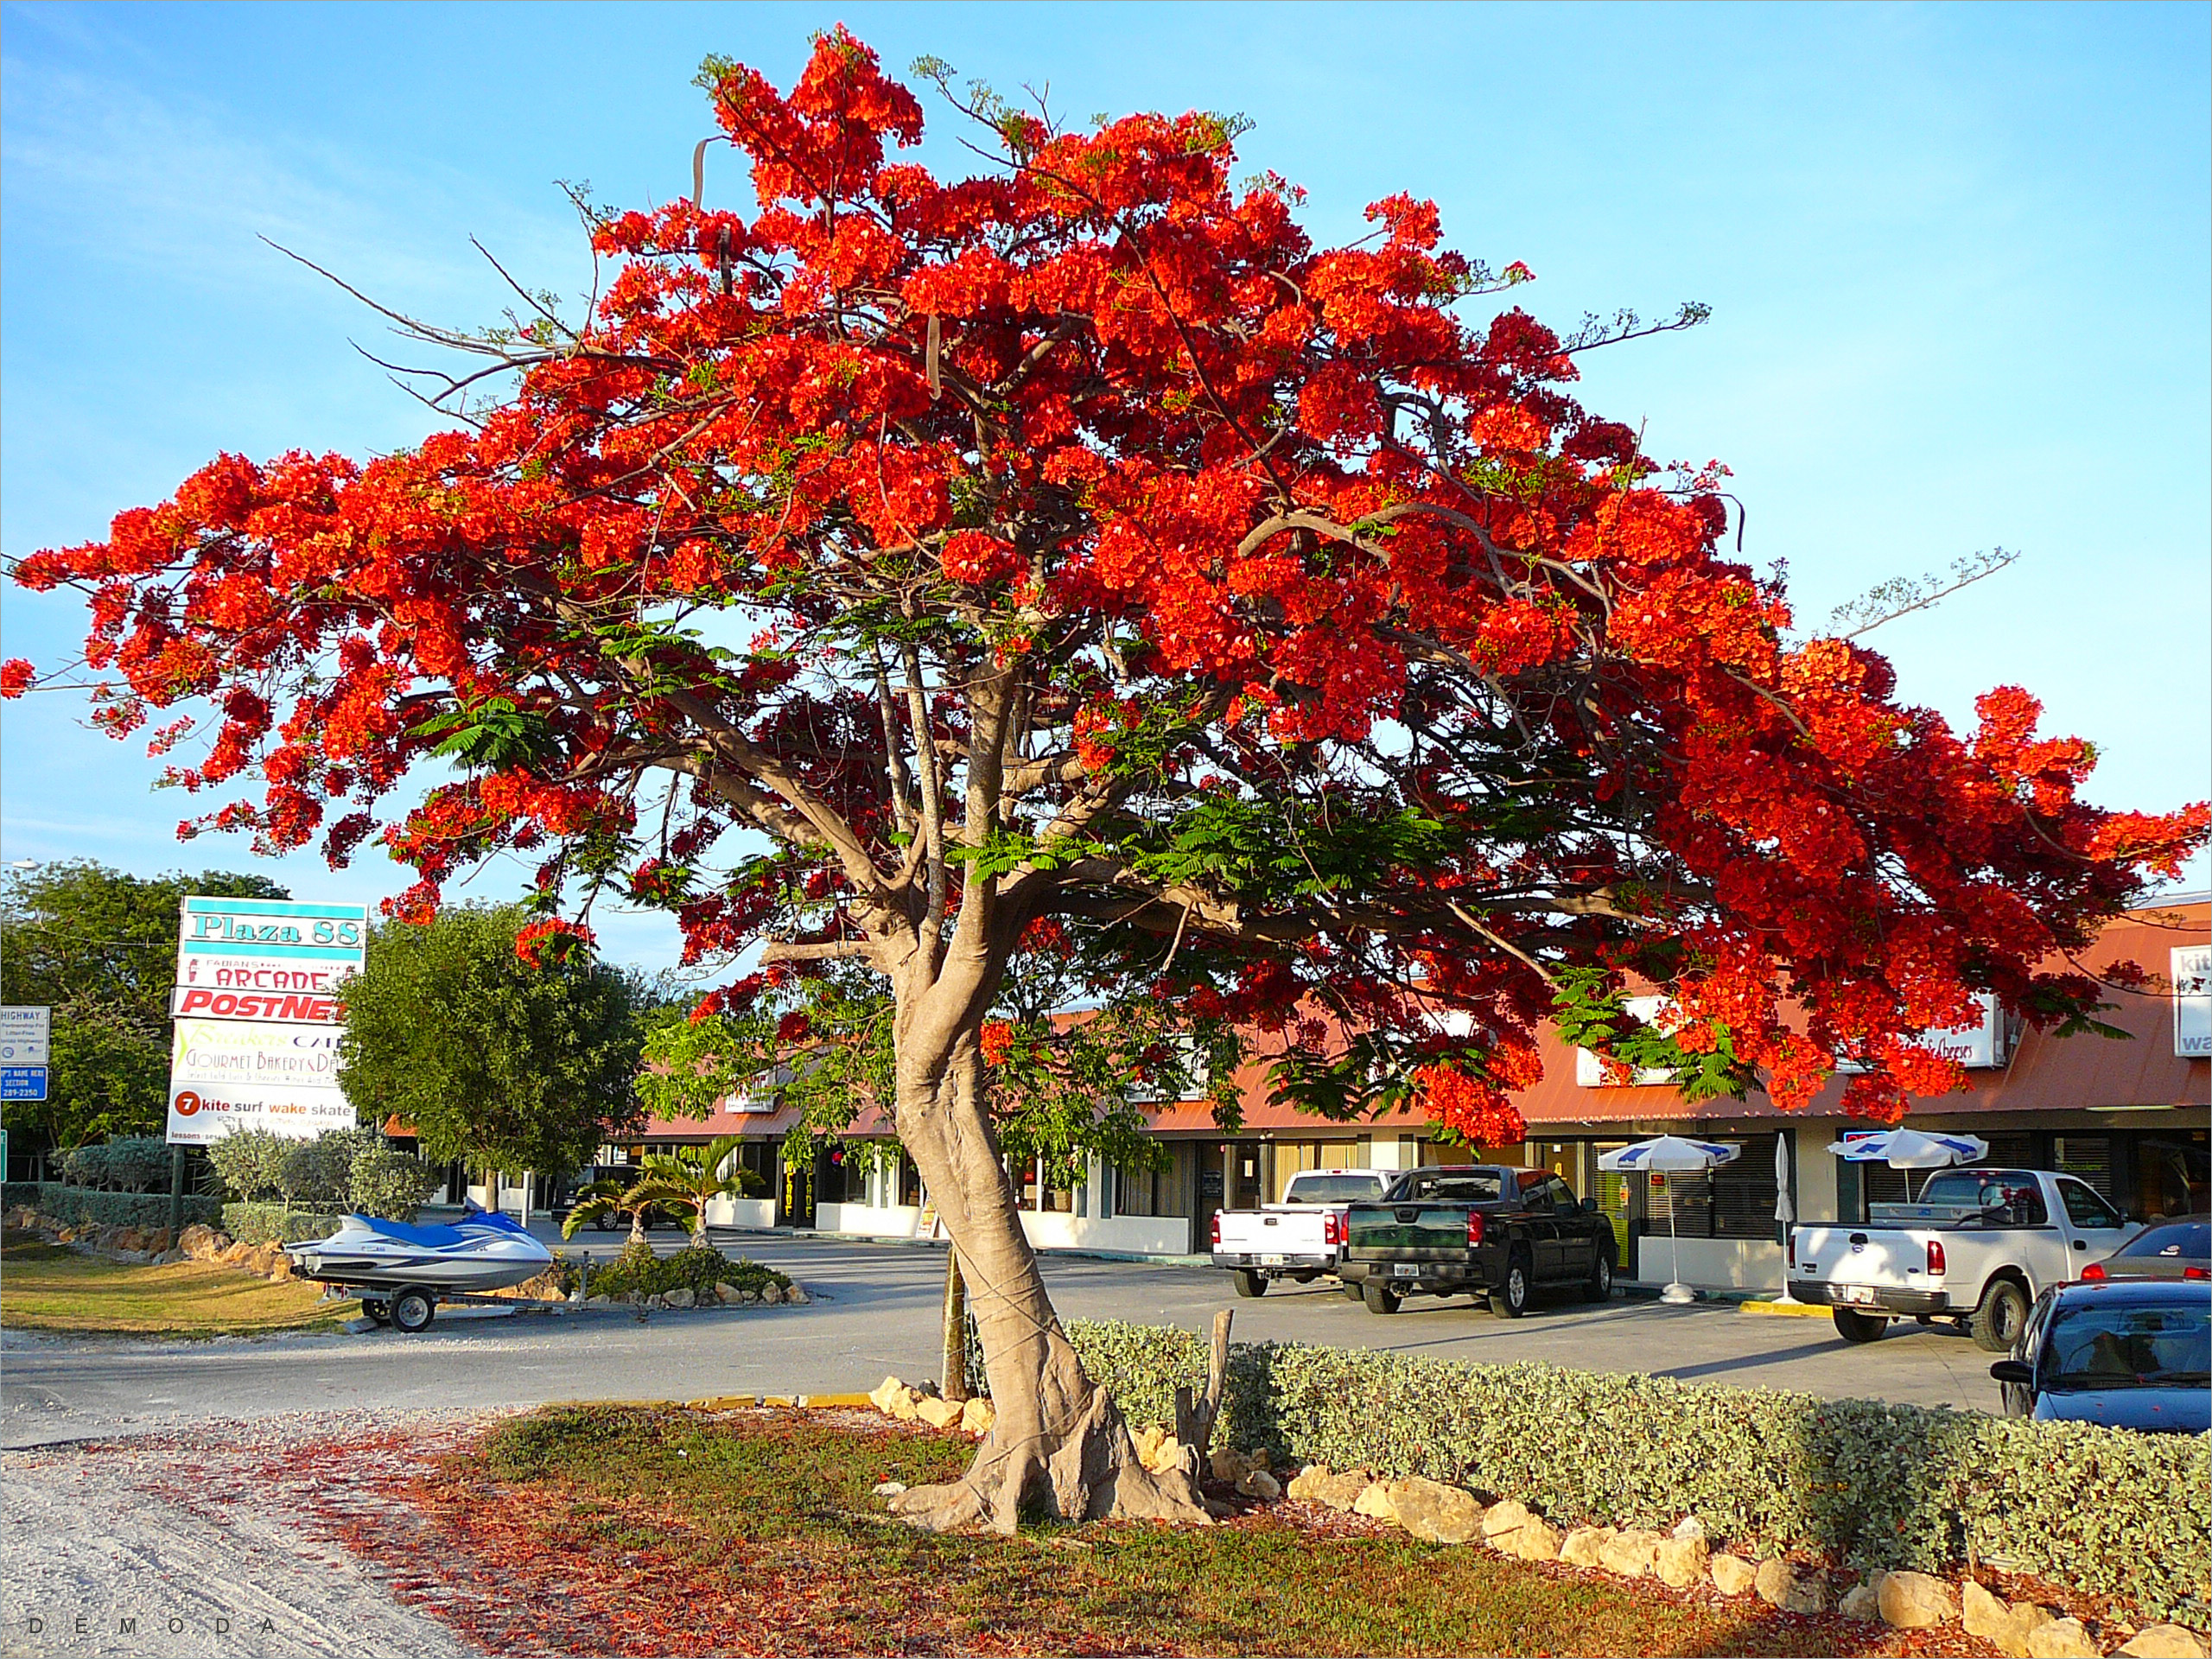 Hình ảnh cây phượng đỏ thắm báo hiệu mùa hè đến tuyệt đẹp